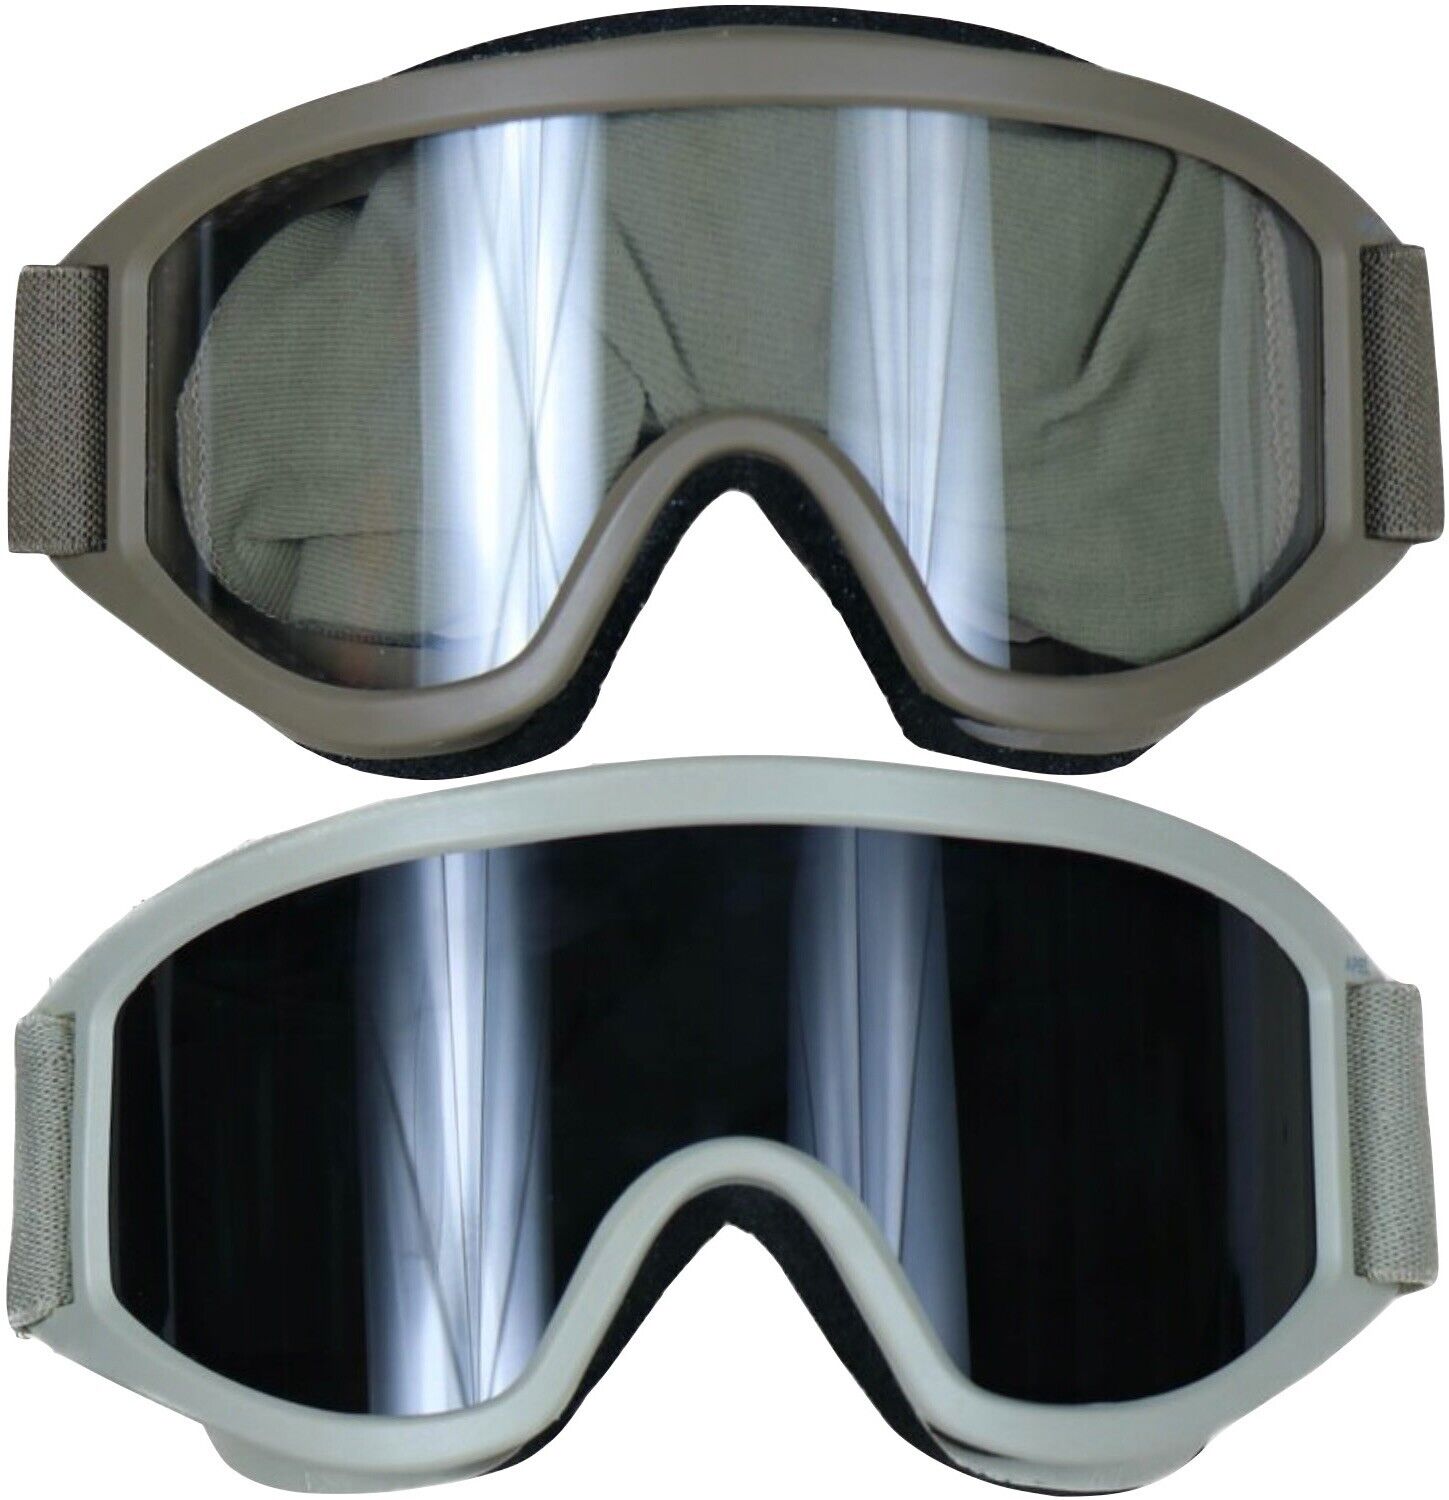 ESS Ballistic Helmet Striker Series Goggles Coyote Tan No Extra Lens or Case